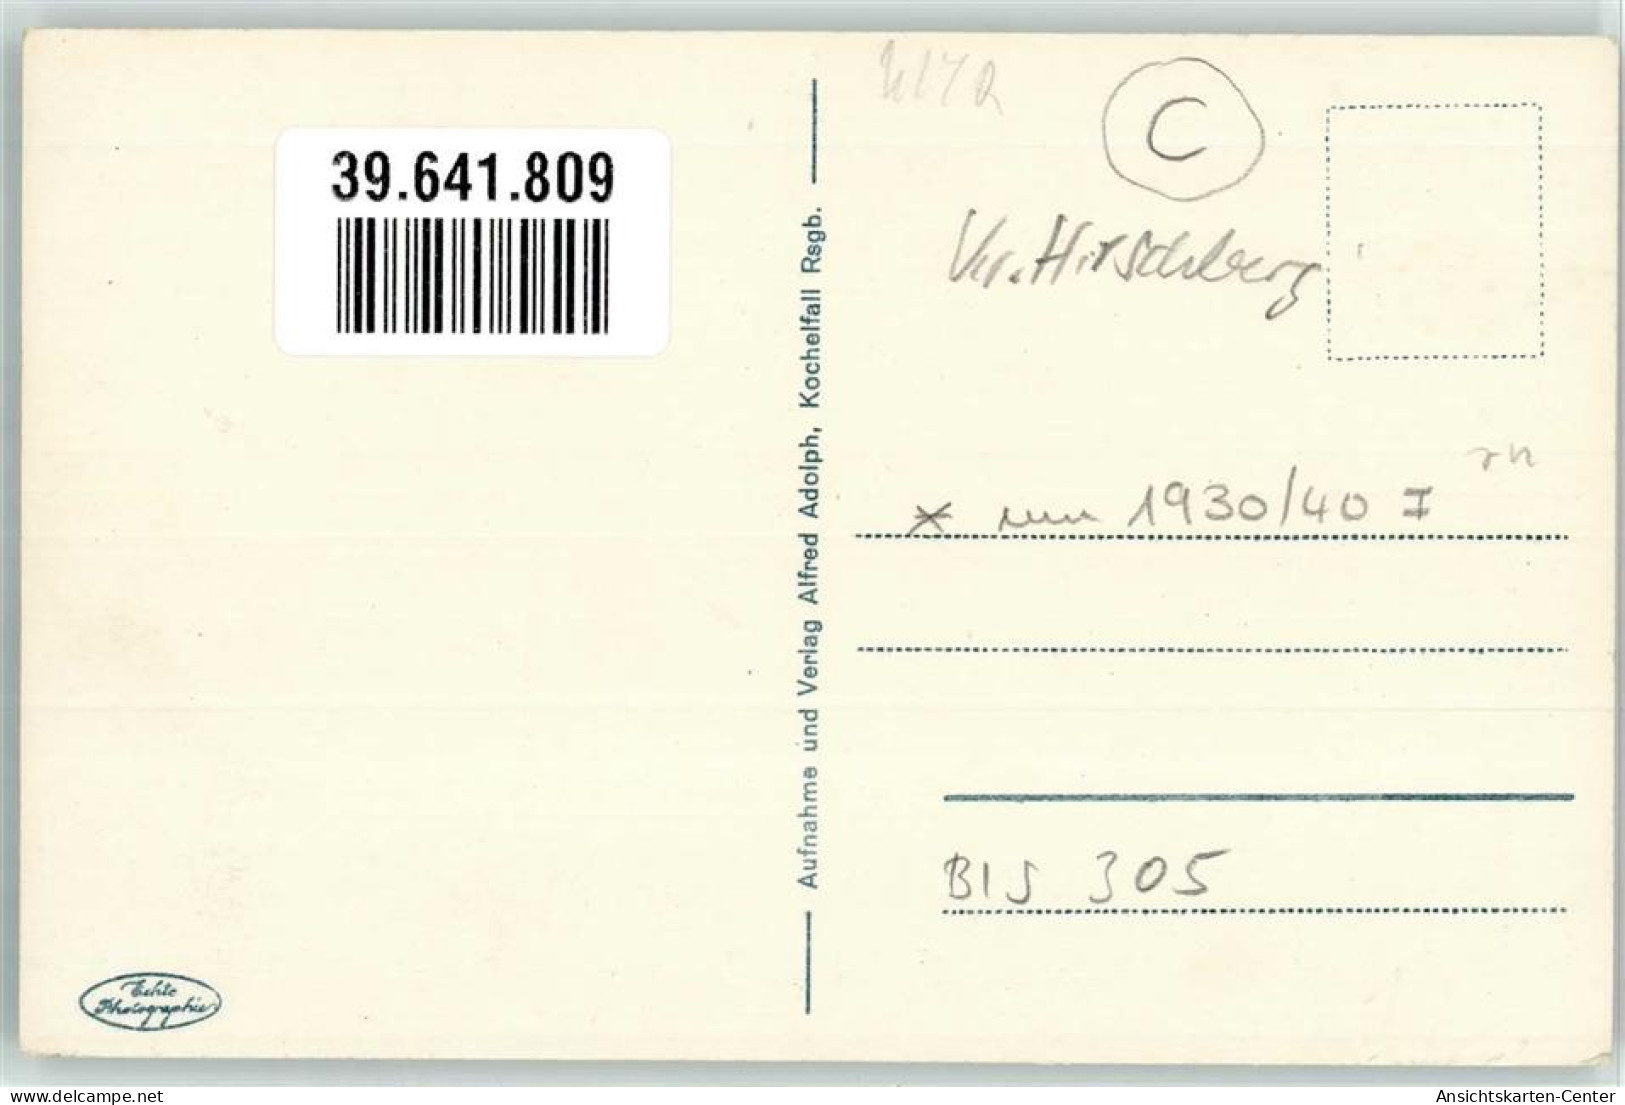 39641809 - Schreiberhau Szklarska Poreba - Polonia